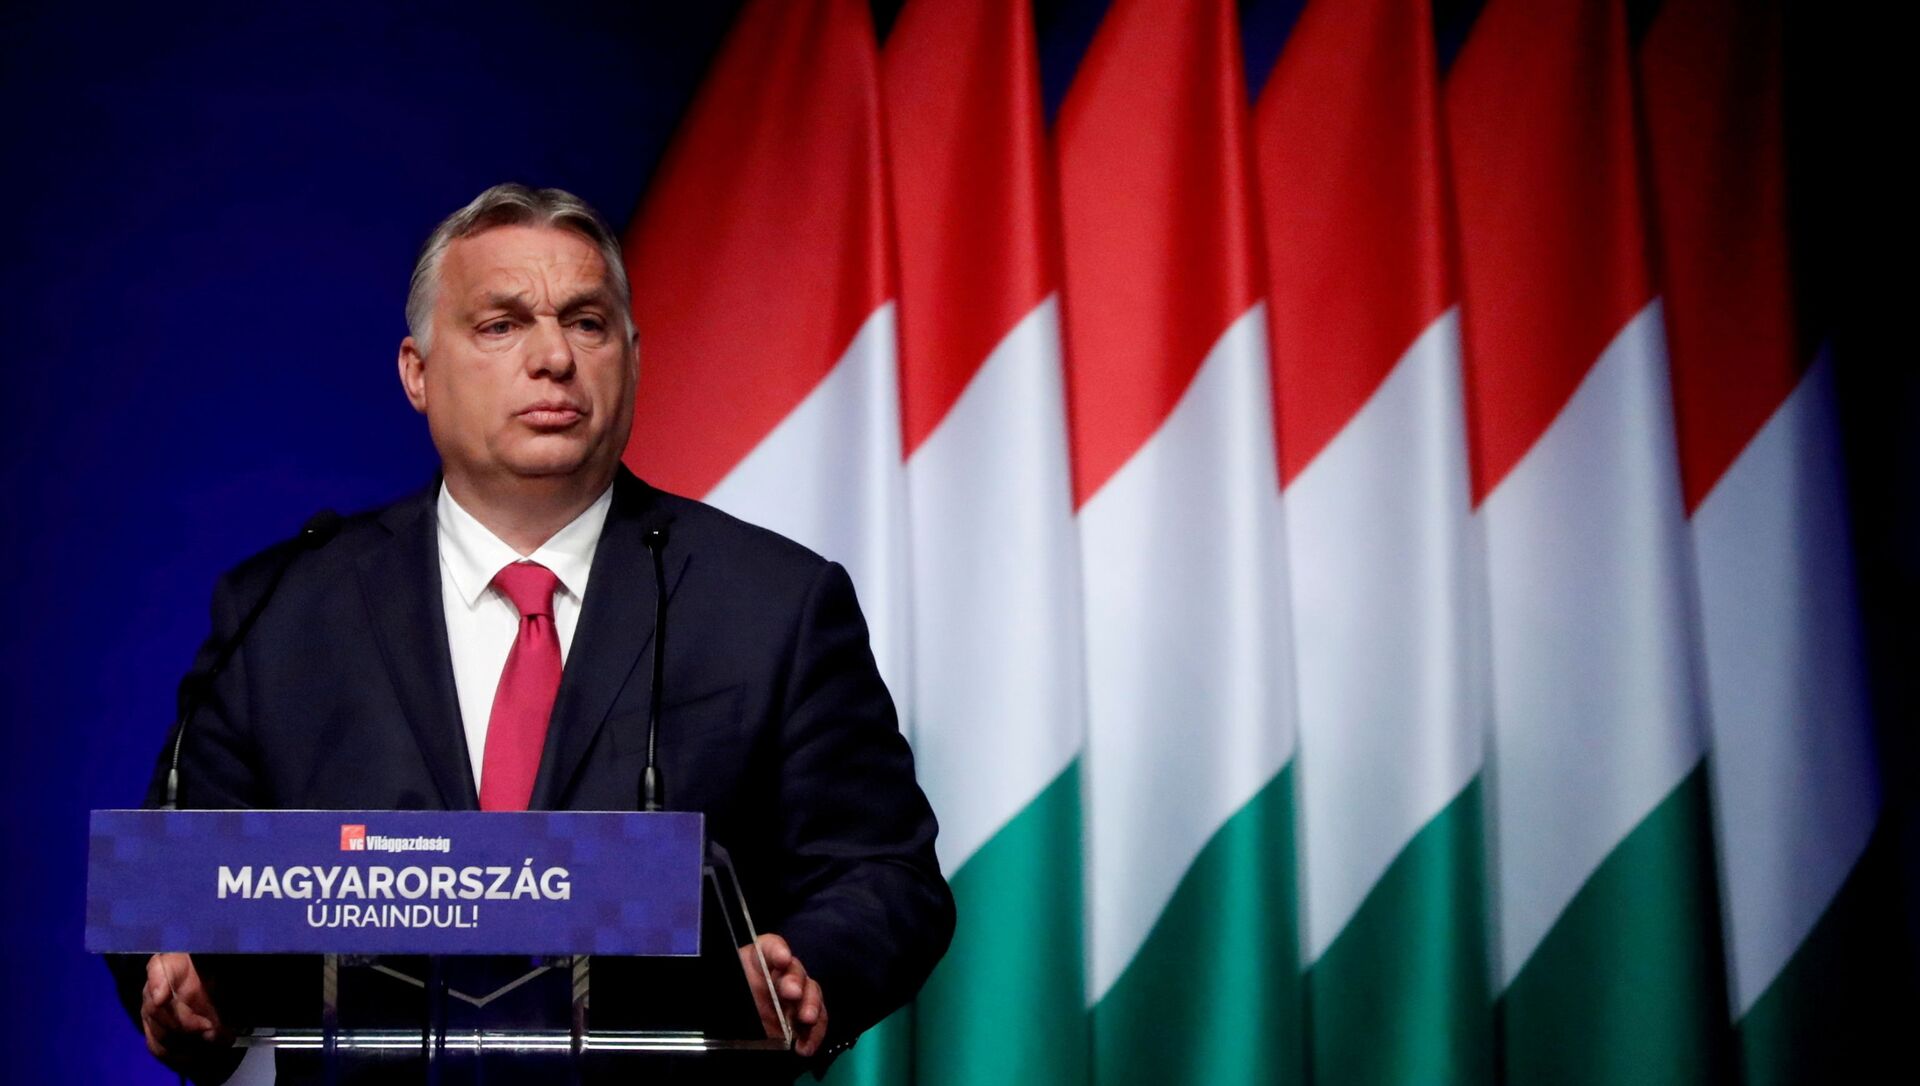 Viktor Orban à Budapest en juin 2021 - Sputnik Afrique, 1920, 21.07.2021